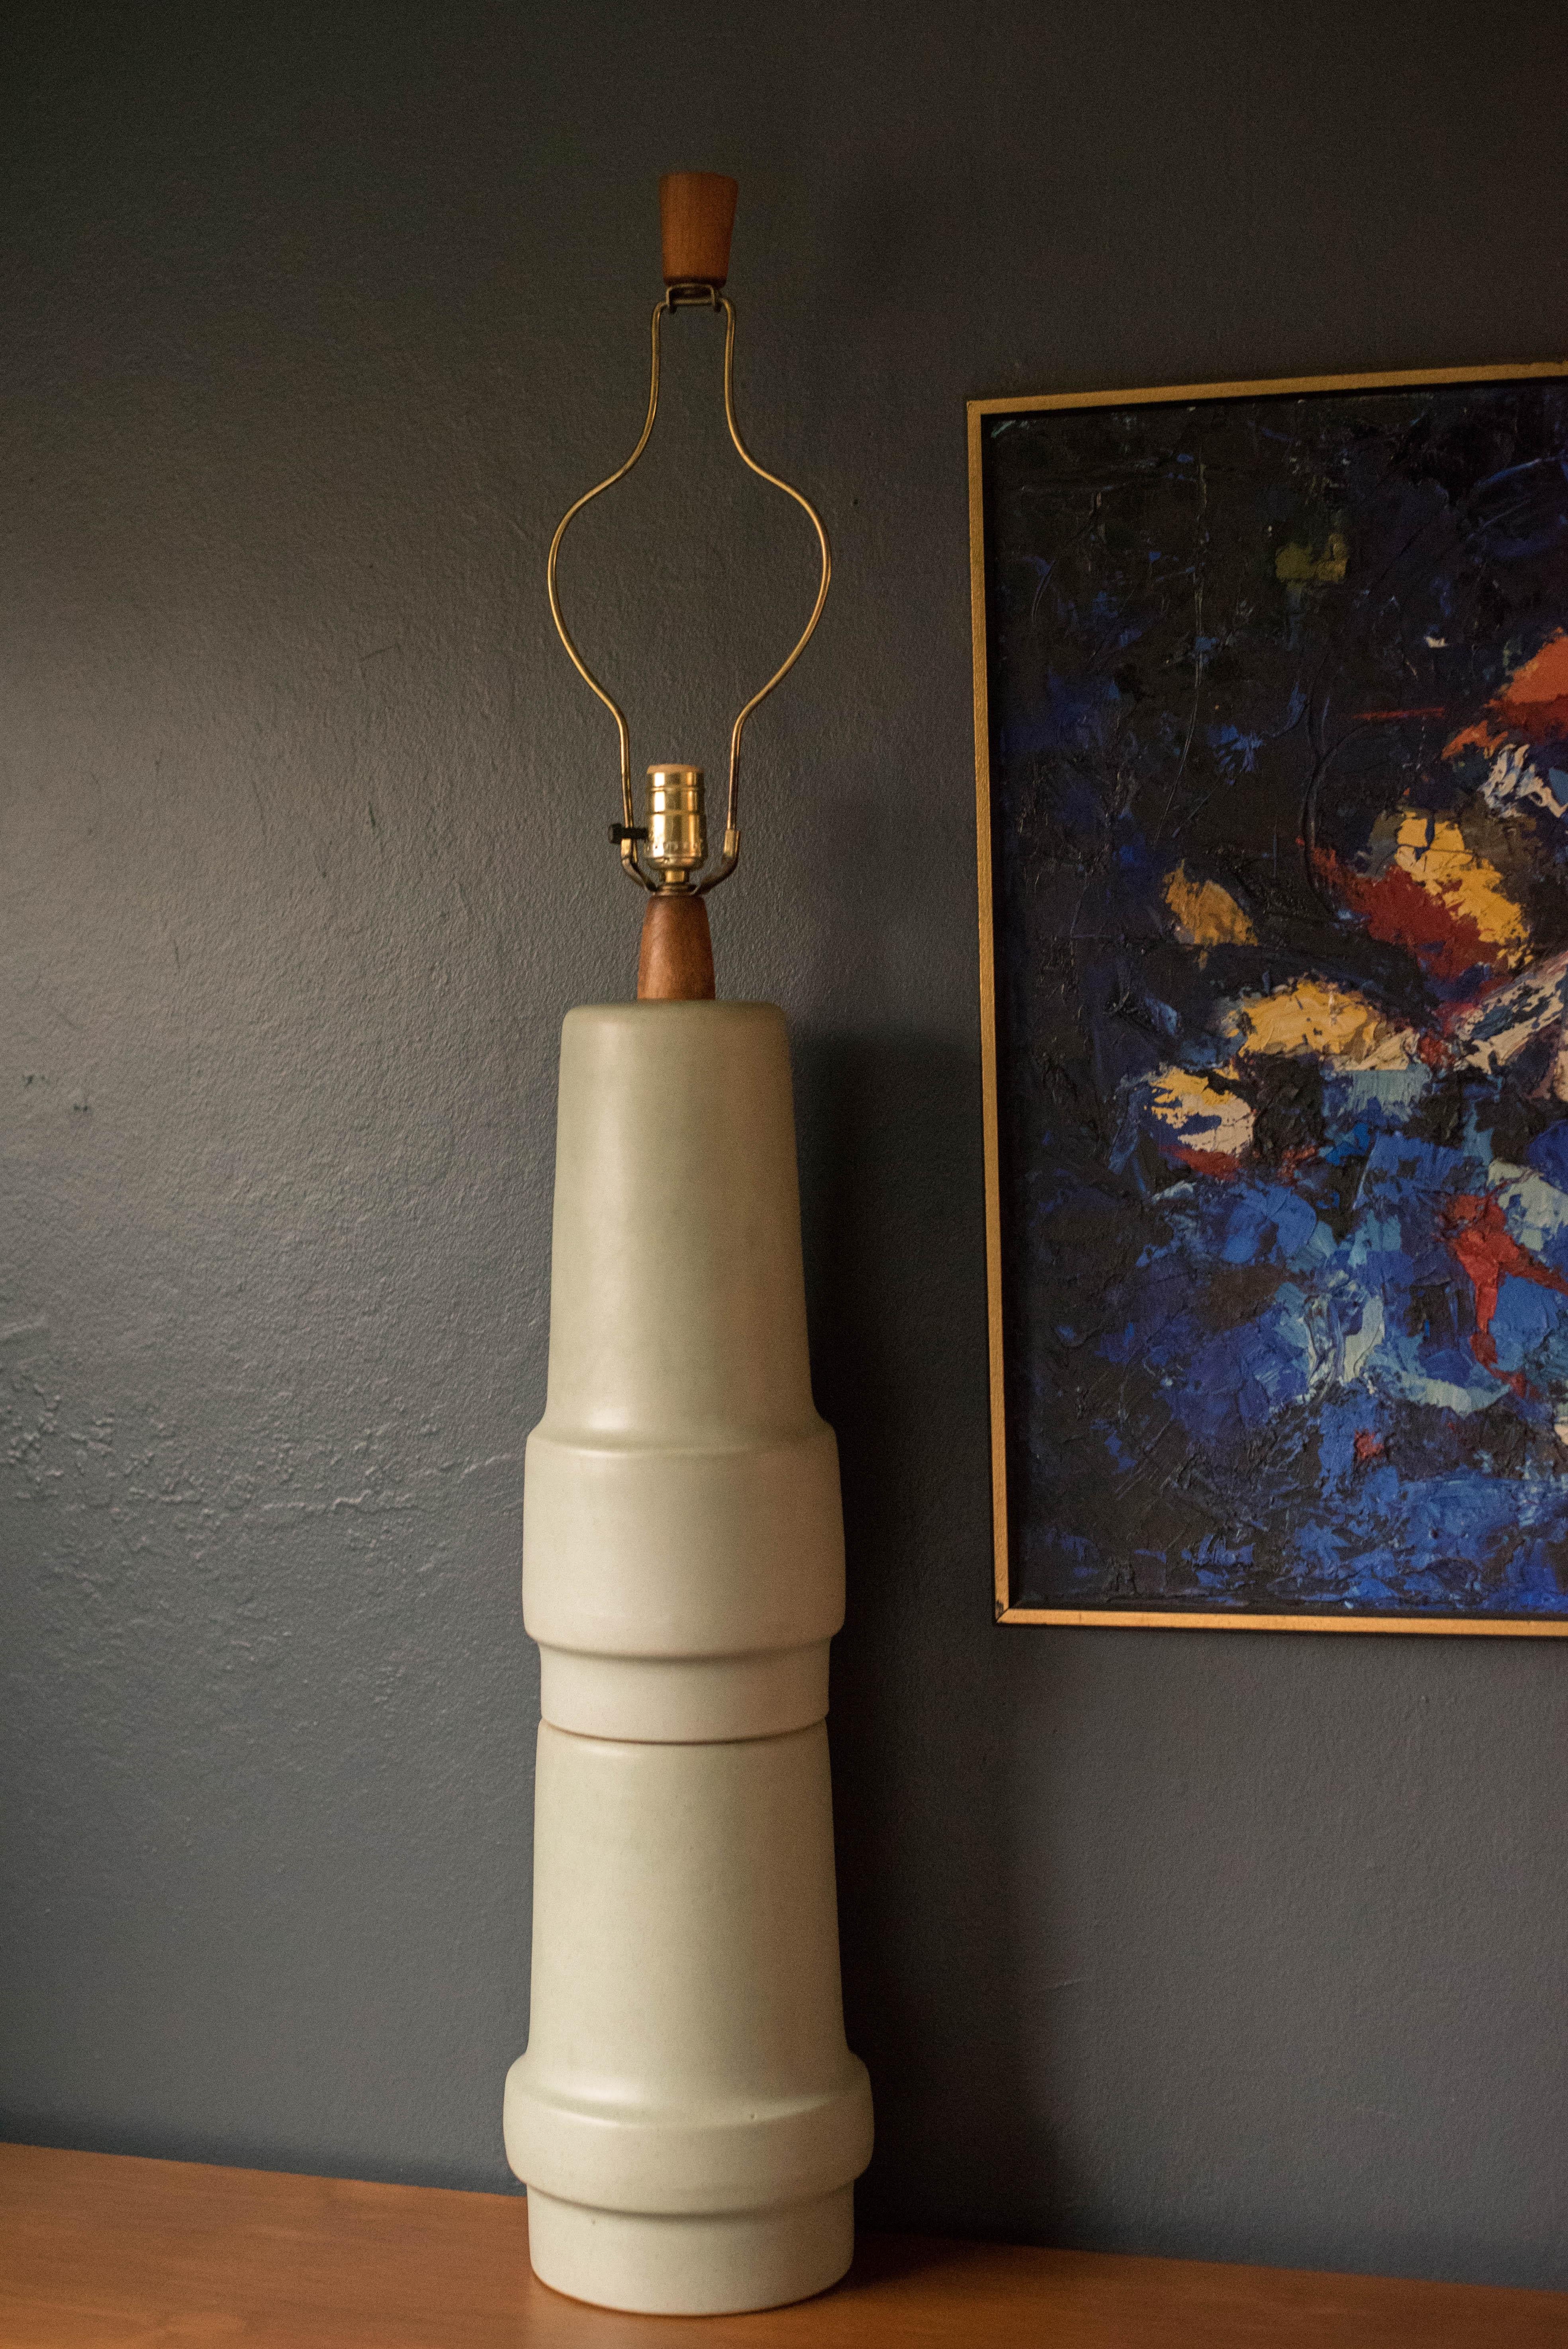 Lampe en céramique et noyer du milieu du siècle par Gordon et Jane Martz pour les Studios Marshall. Cette lampe surdimensionnée présente une forme sculpturale empilée et comprend un mécanisme d'interrupteur à trois voies.

   

Proposé par Mid